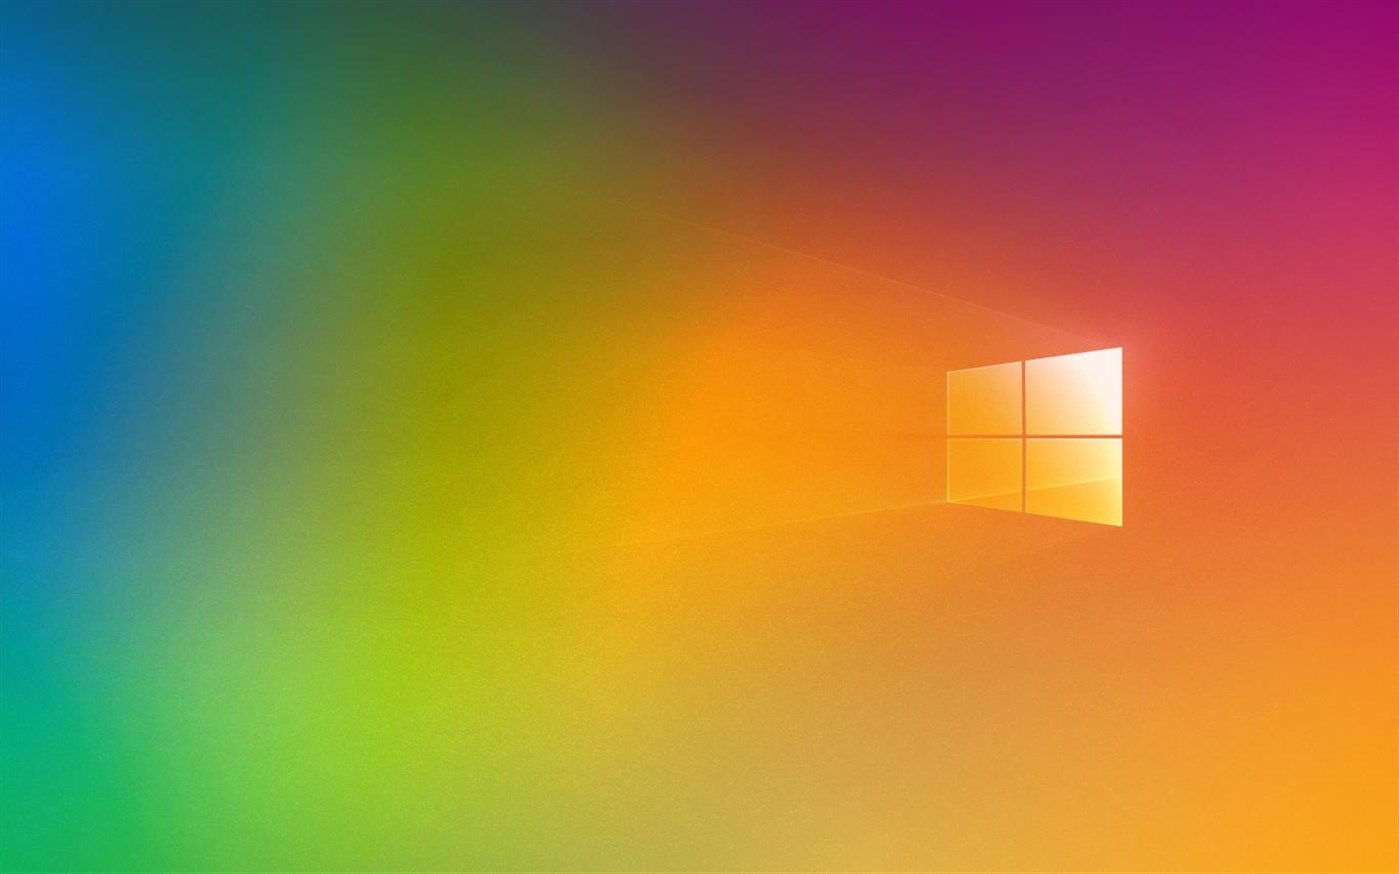 微软推出windows 10系列《pride 2020 Flags》免费壁纸主题包财经头条